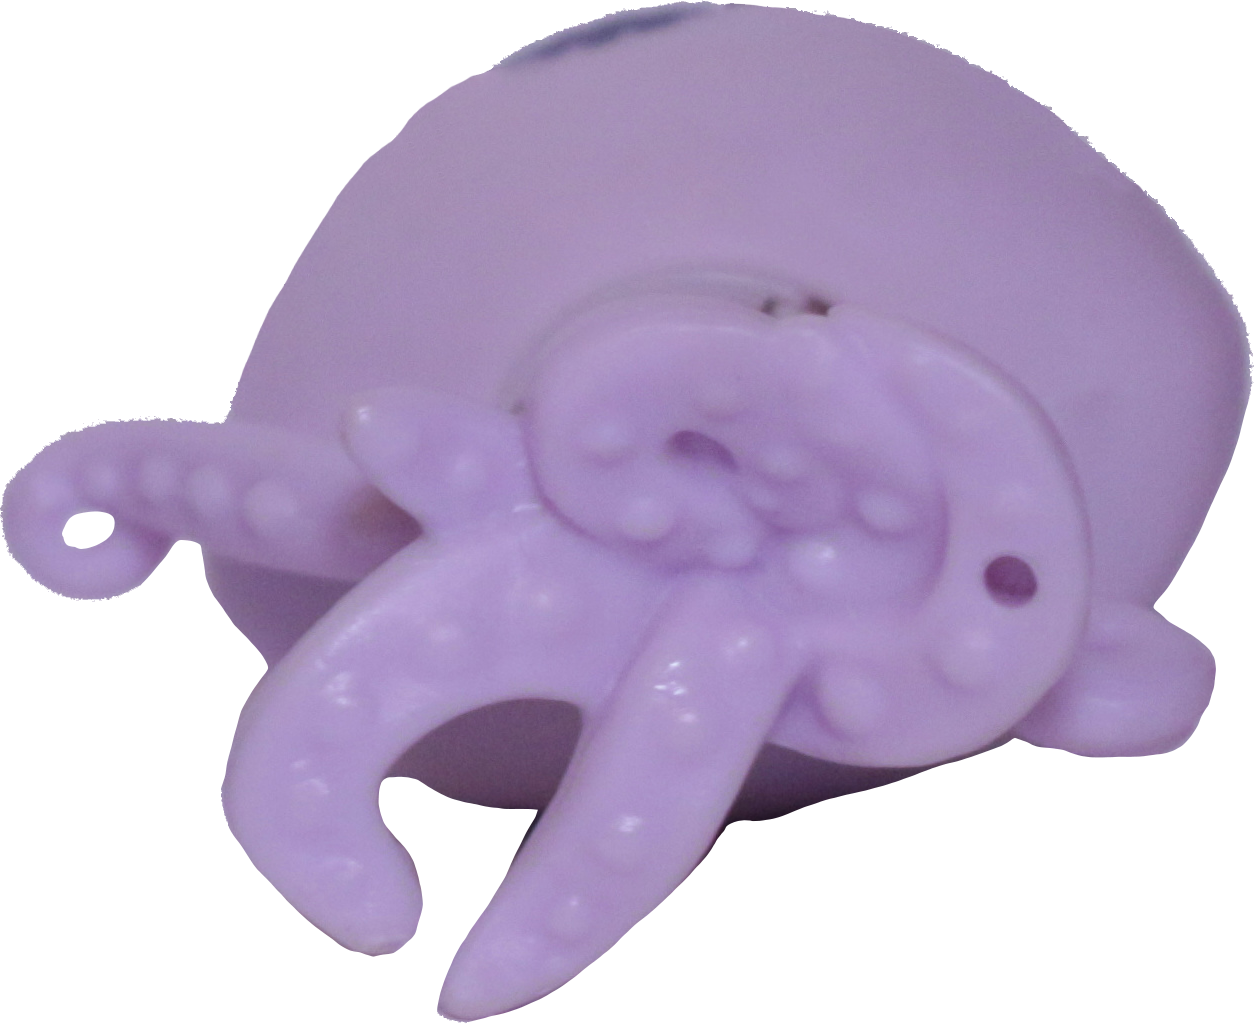 #3836 Octopus "Ocho Drummond"